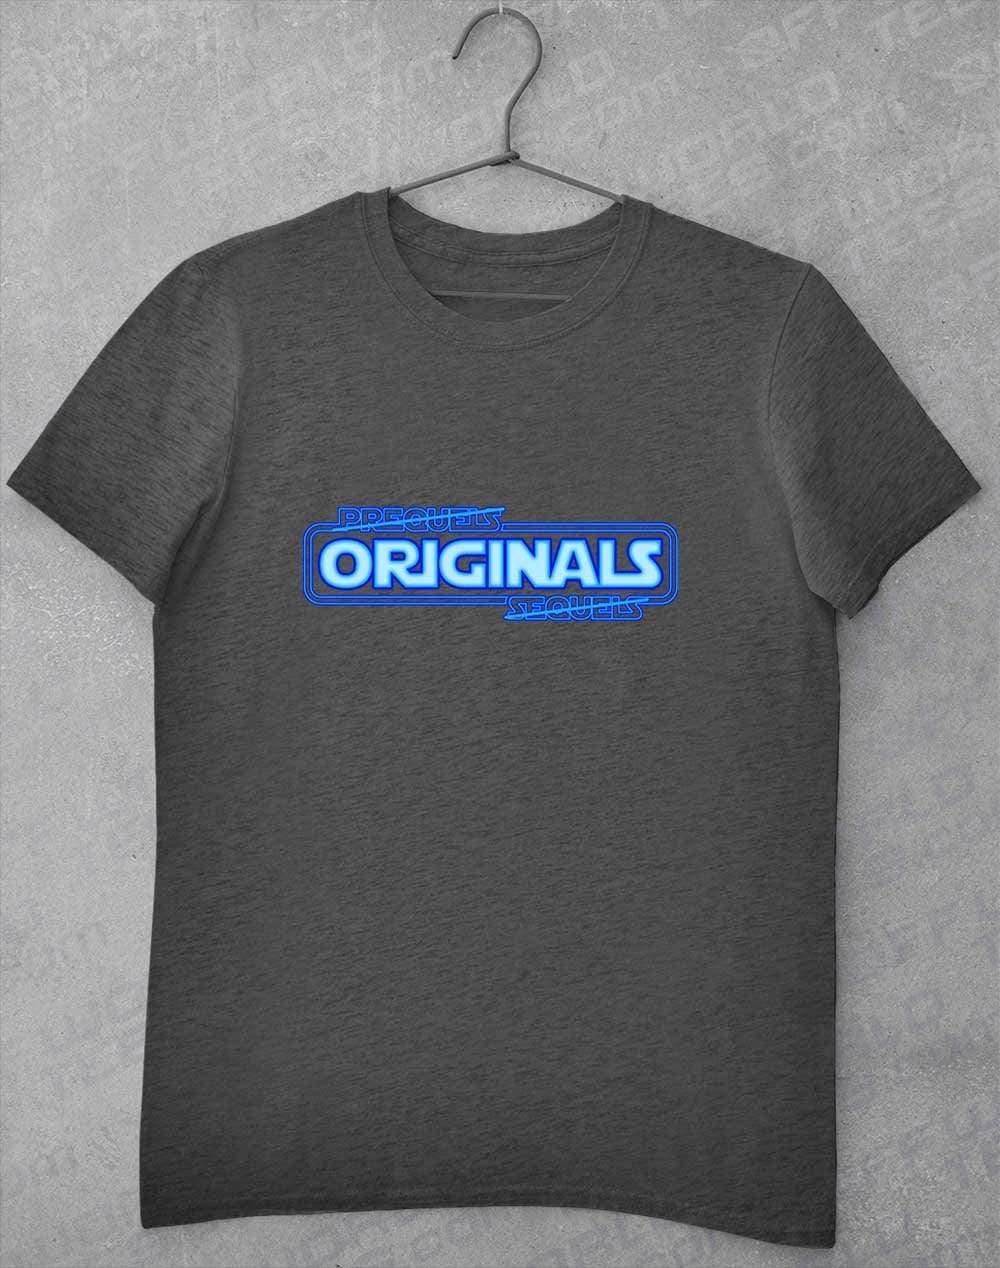 Originals FTW - T-Shirt S / Dark Heather  - Off World Tees